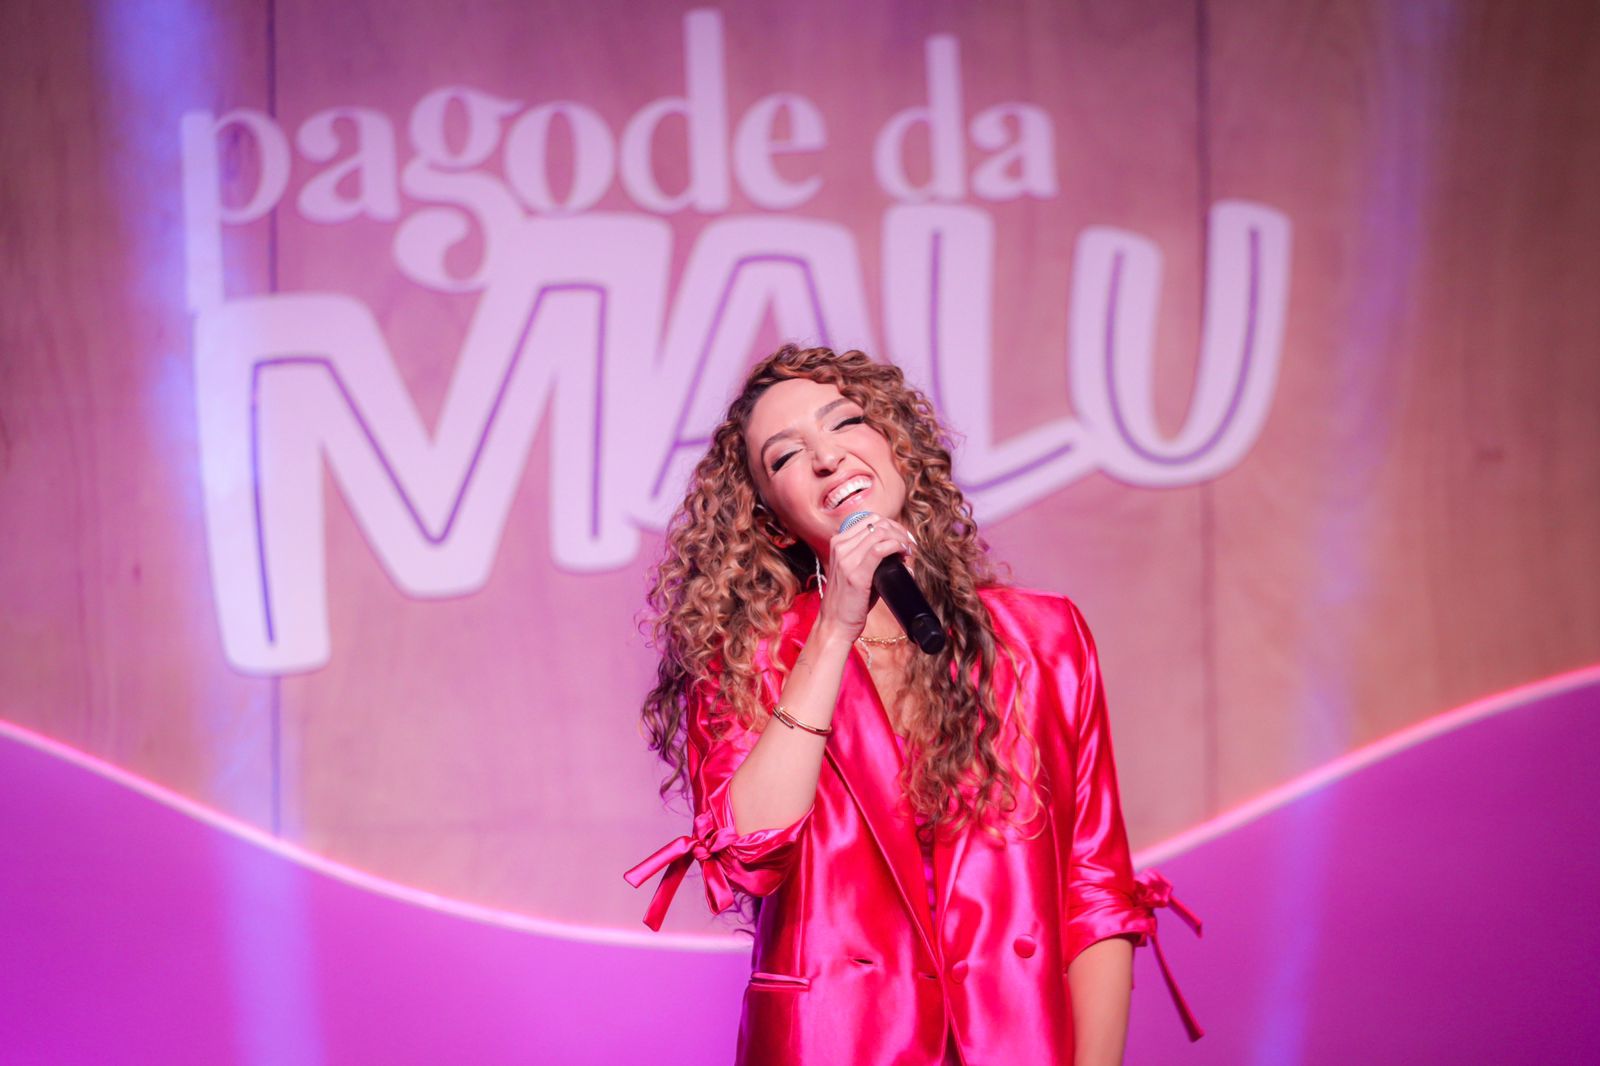 Com mais de 80 milhões de plays em seus vídeos, a cantora é agenciada por Rodriguinho e pela Impacta Show. Foto: Divulgação